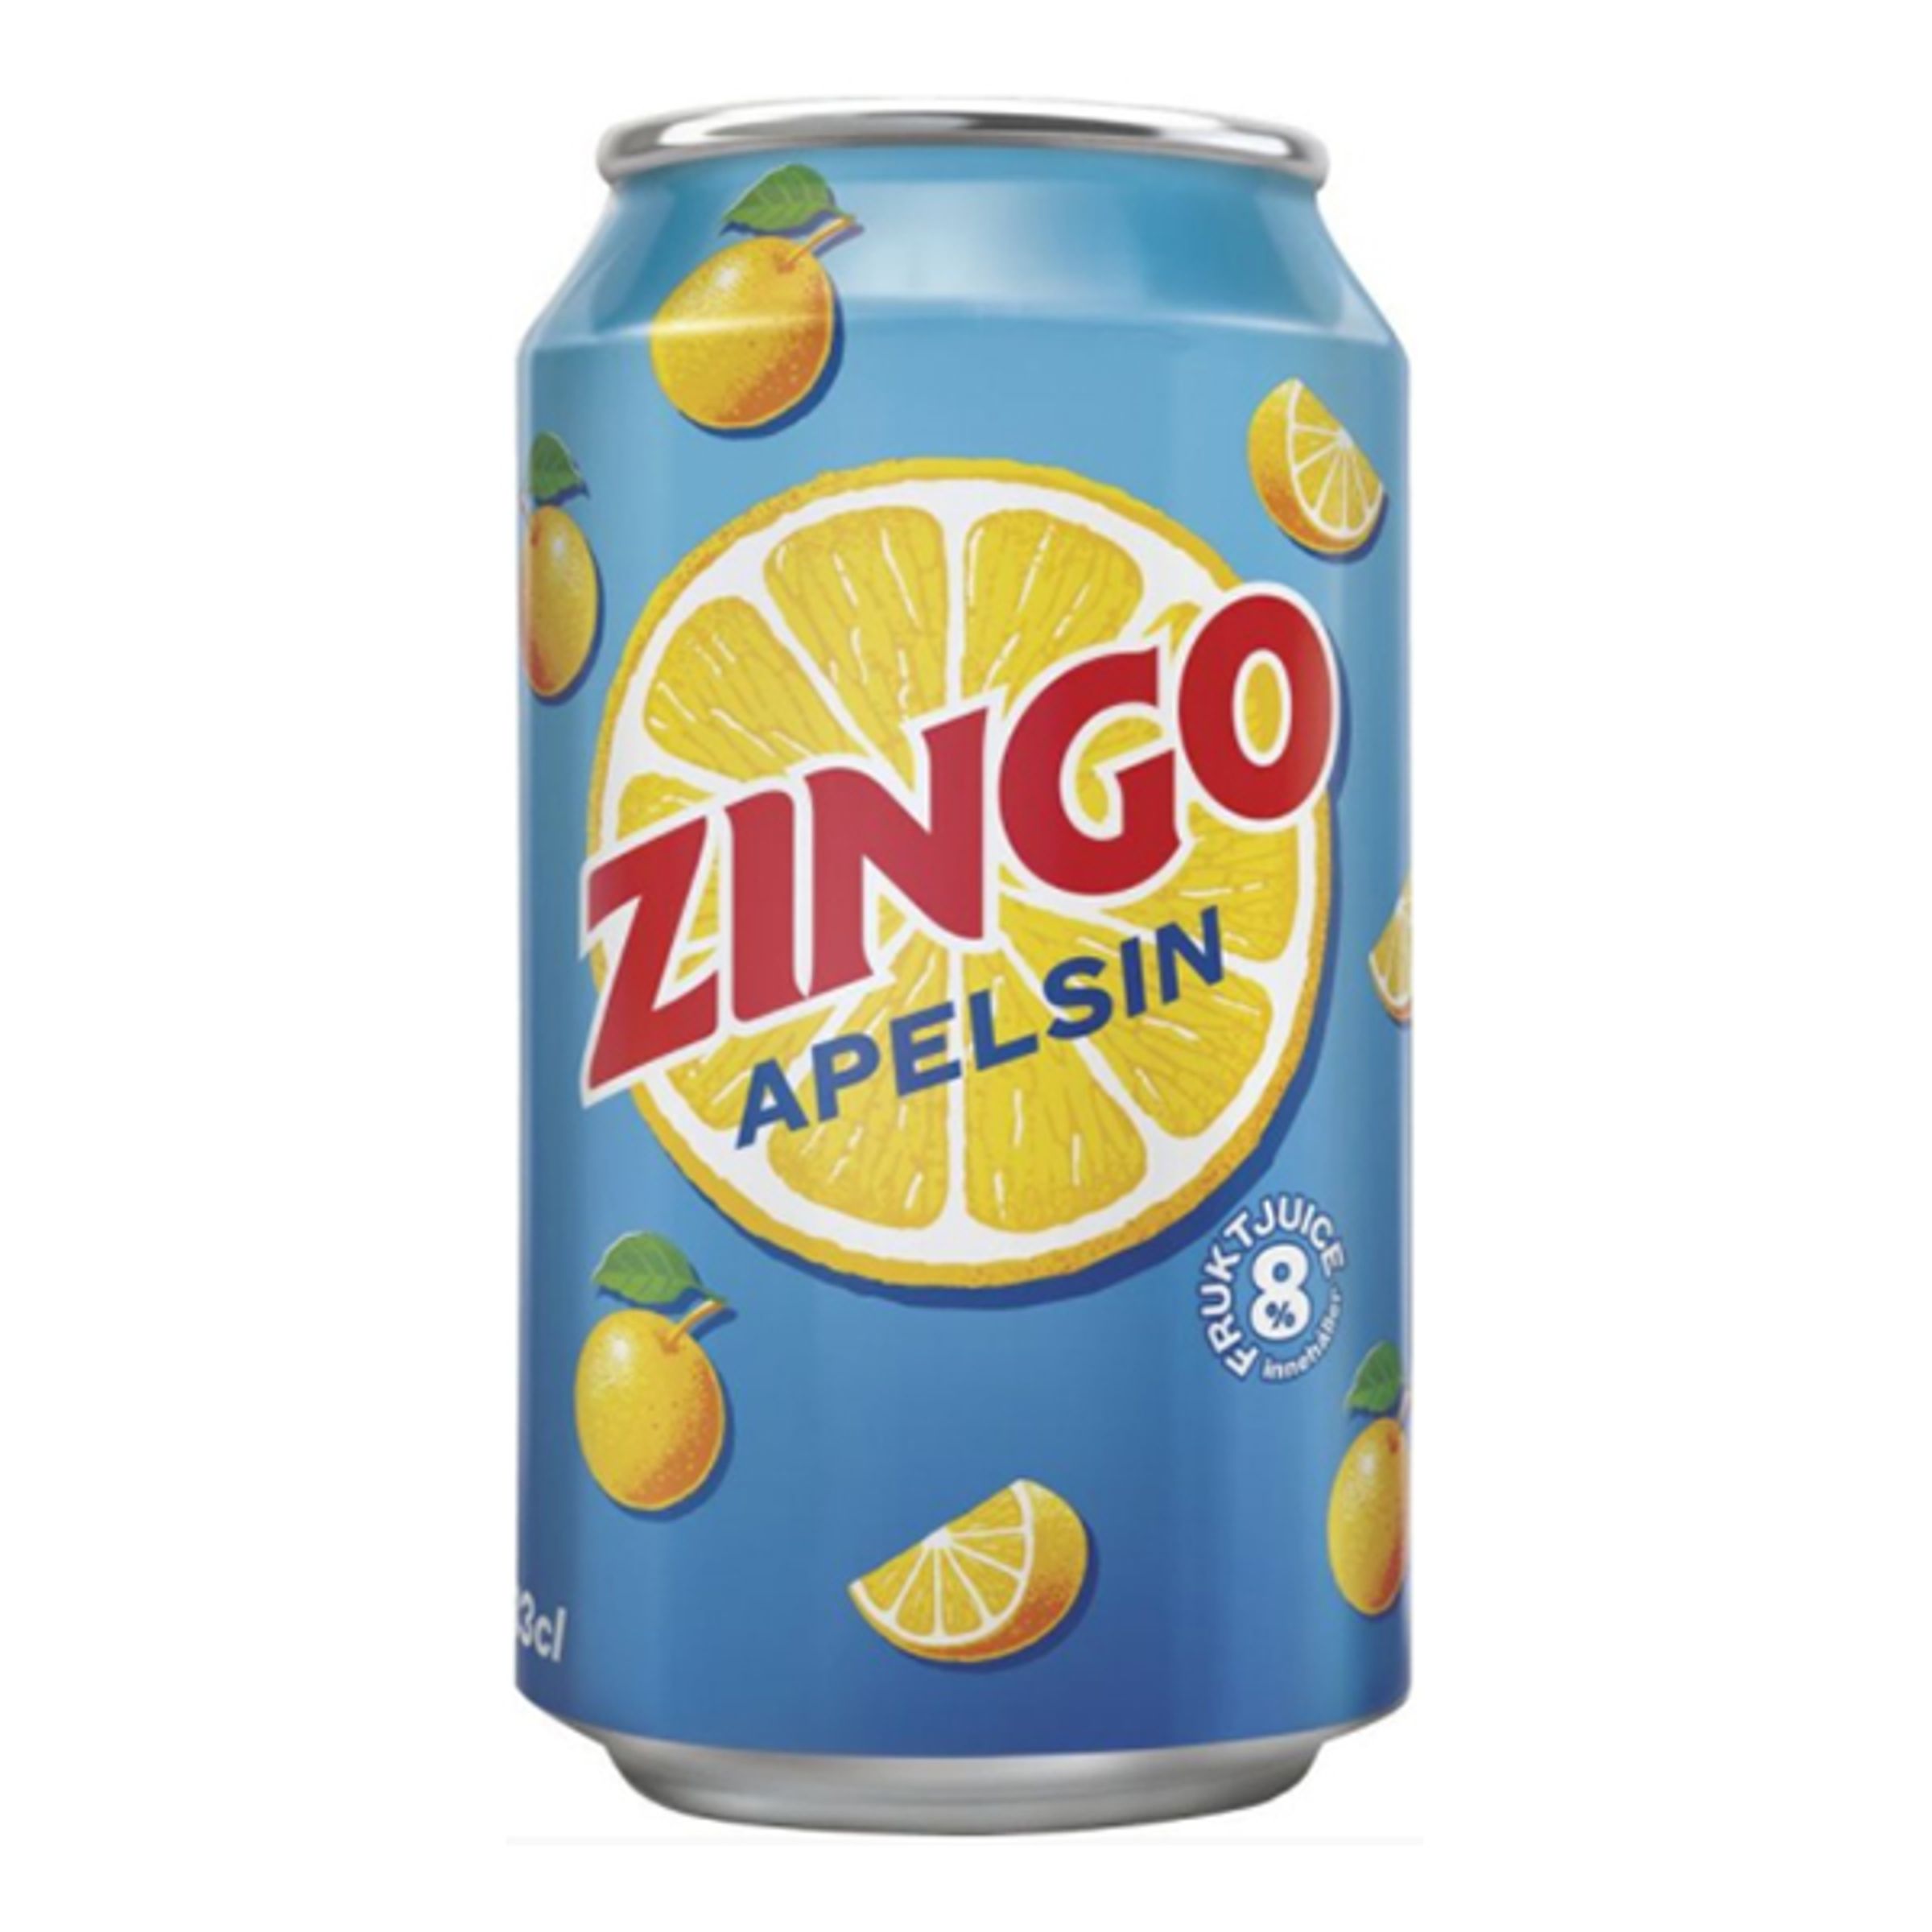 Zingo Orange - 33 cl